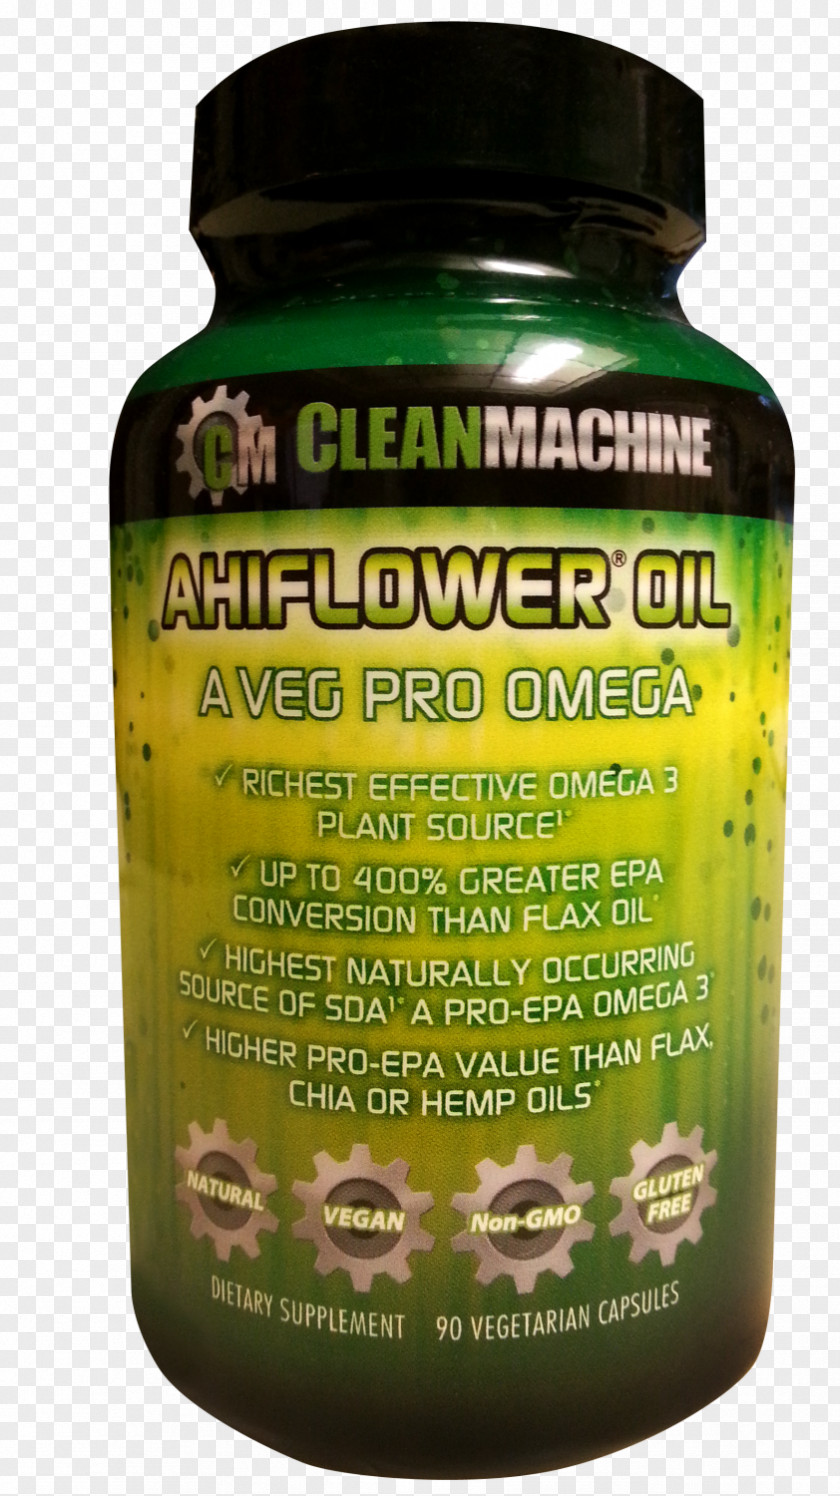 Ahiflower Oil90 Vegetarian Capsules Dietary Supplement VegetarianismBottle Mockup Clean Machine PNG